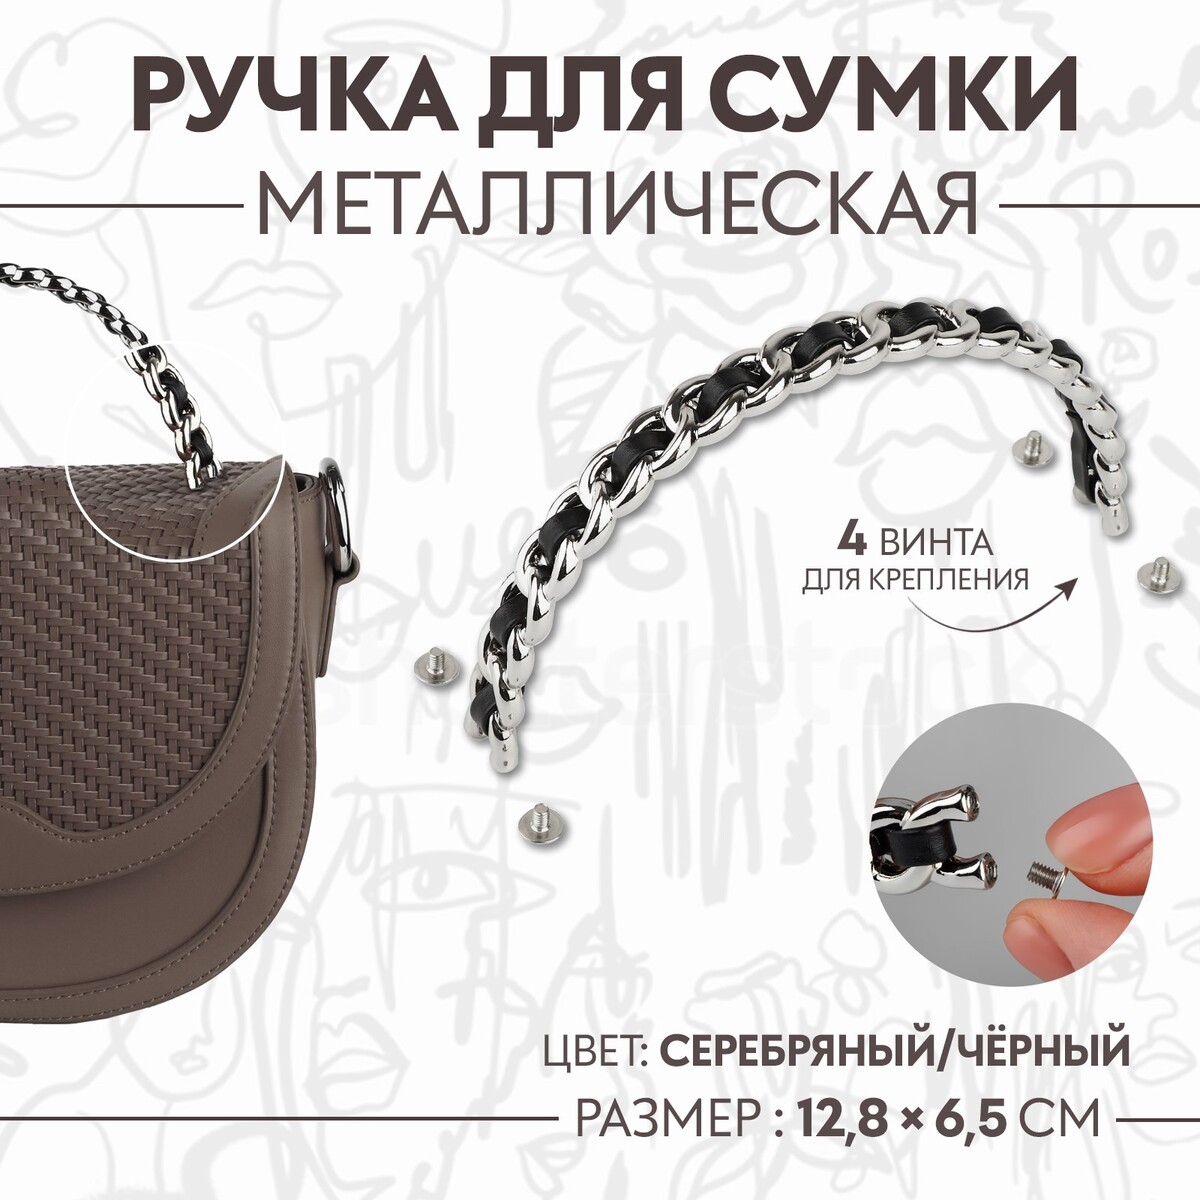 Ручка для сумки, металлическая, с винтами для крепления, 12,8 × 6,5 см, цвет серебряный/черный темногорье серебряный лес